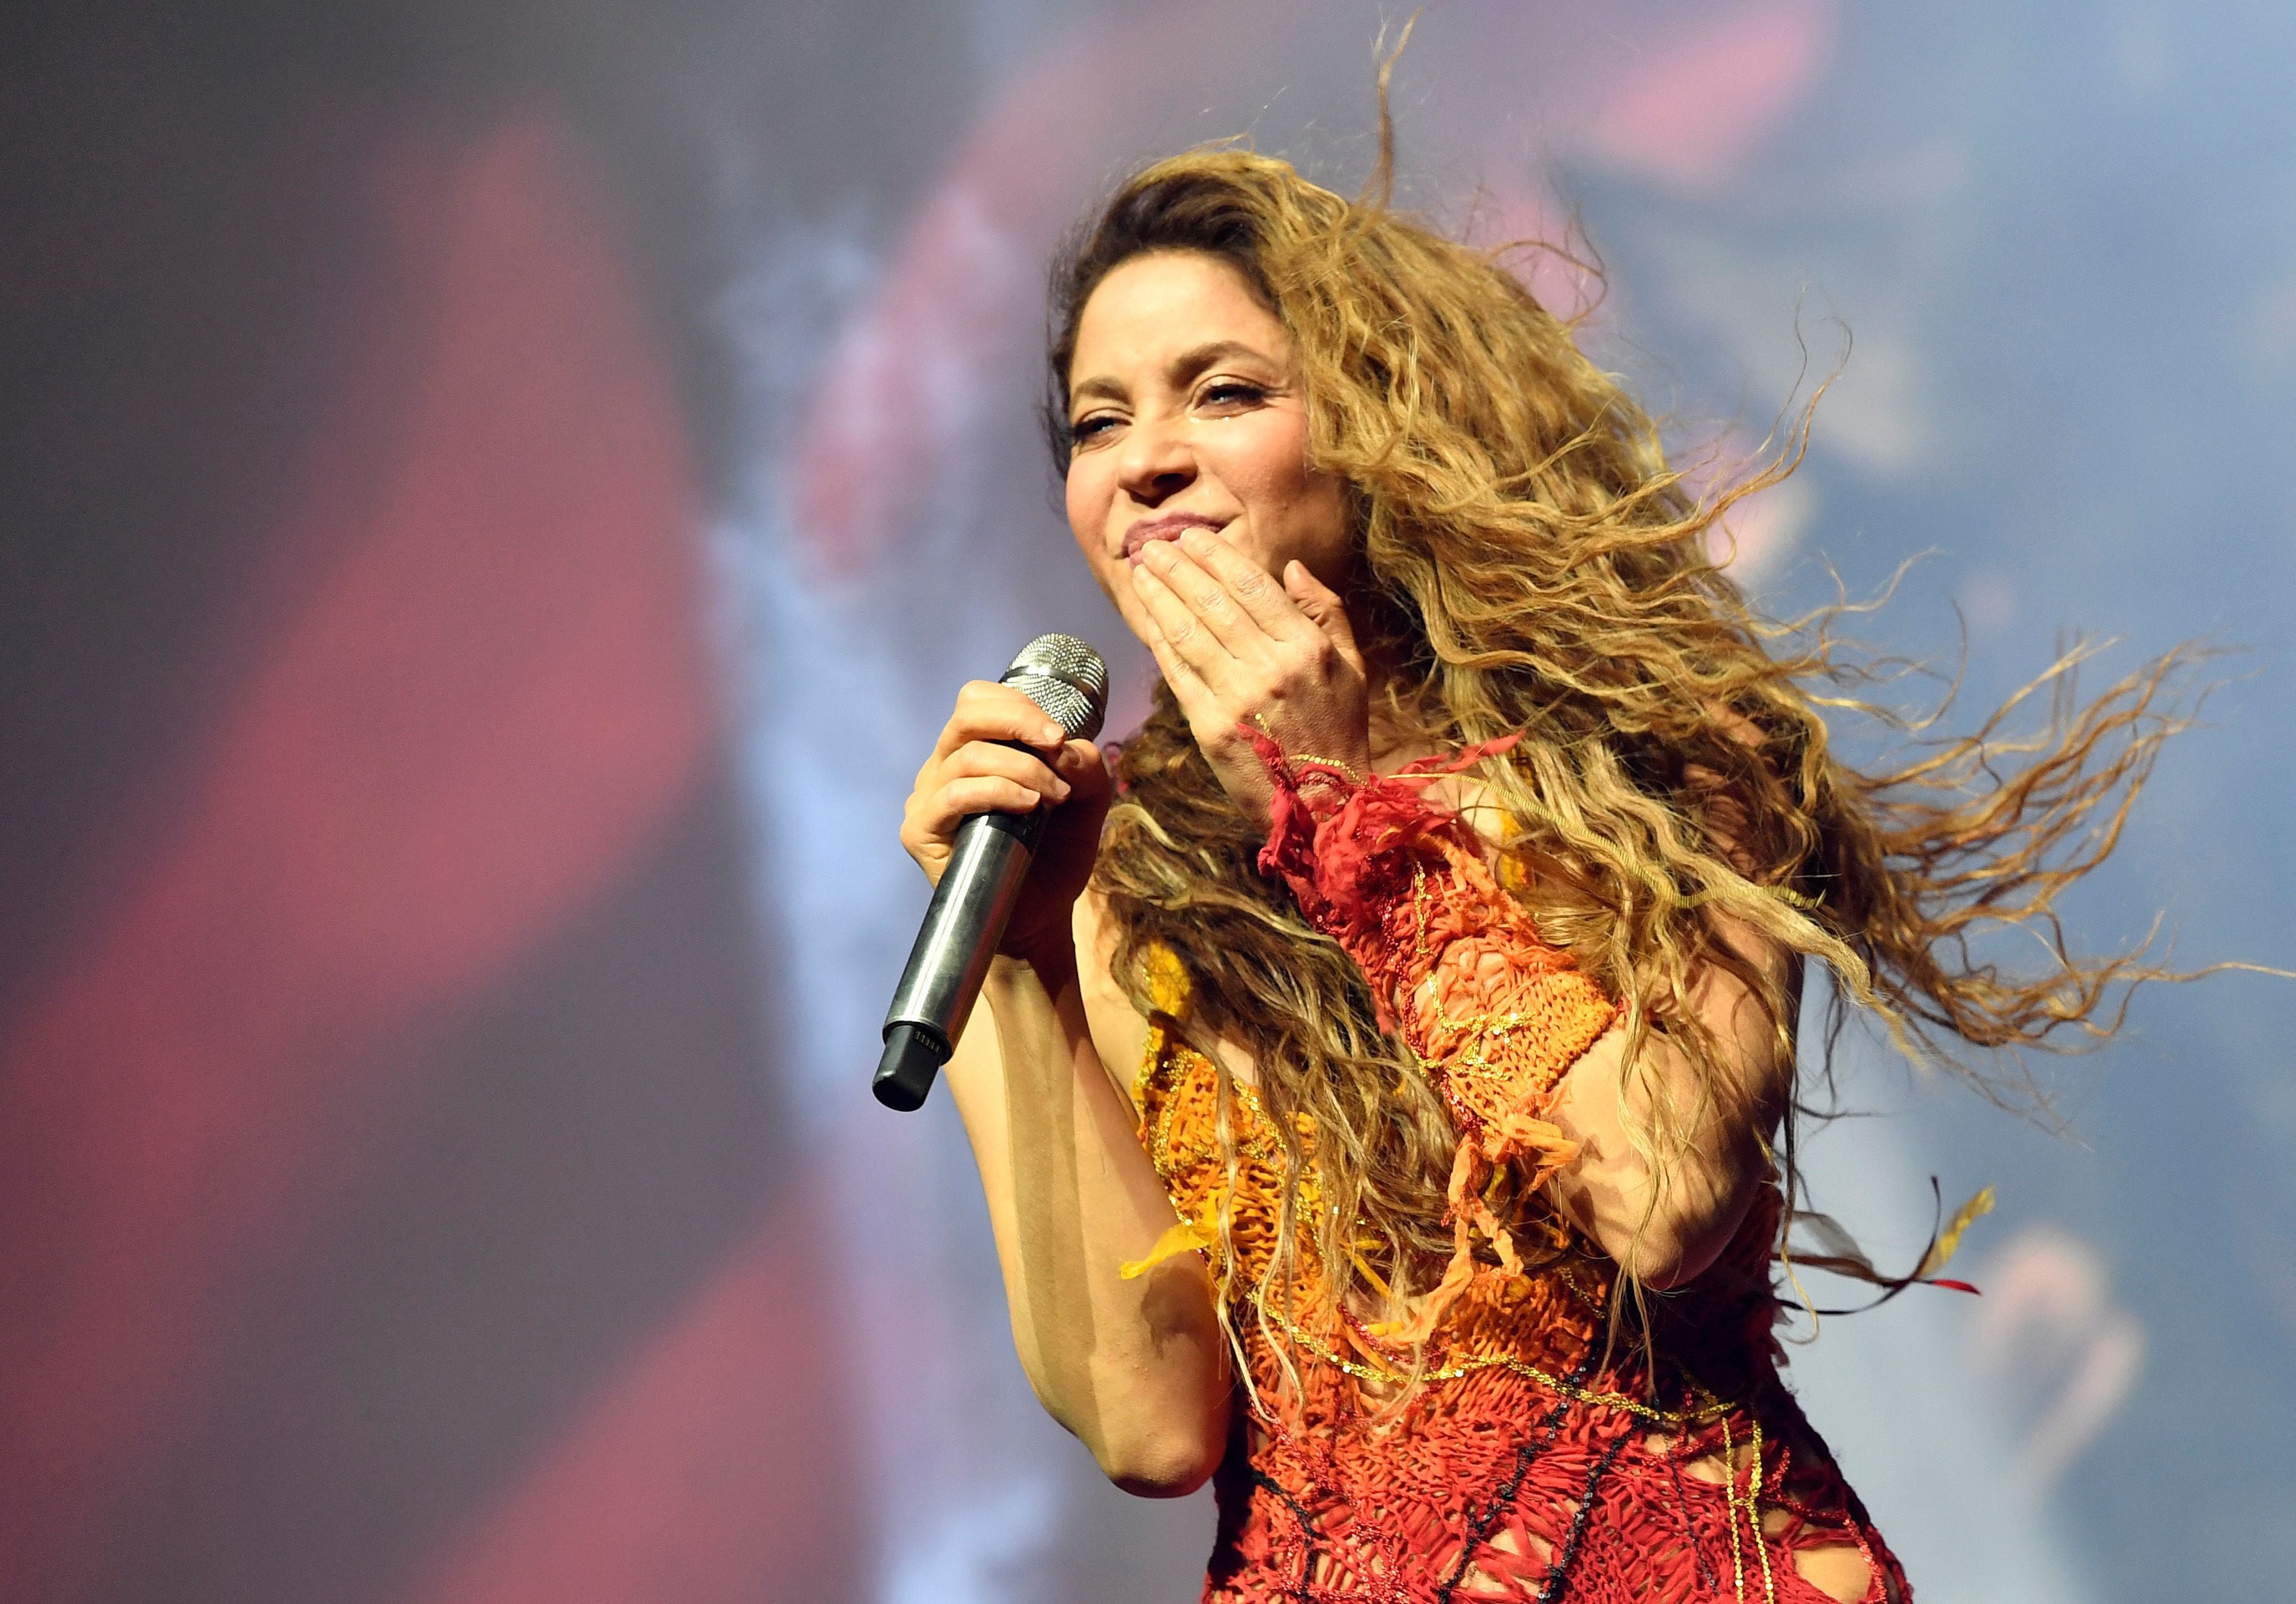 Con su carisma y talento, Shakira dominó el escenario de Coachella. Ella deslumbró a la multitud con sus movimientos de baile y su inconfundible voz.
